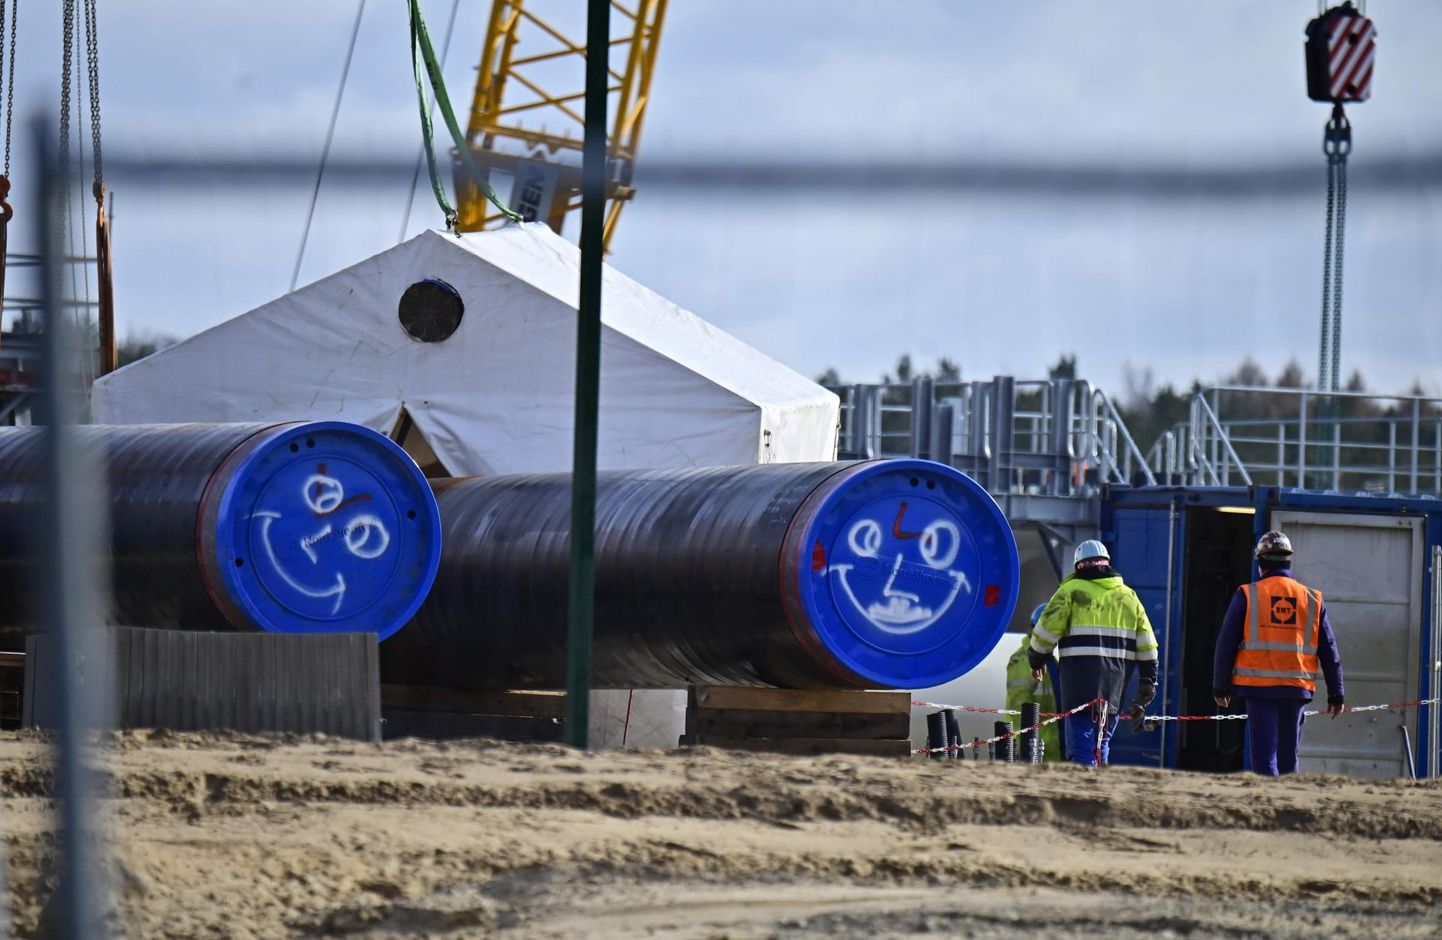 Töömehed toimetavad Kirde-Saksamaal Lubminis, kus gaasitorujuhe Nord Stream 2 peaks jõudma Läänemerest maismaale. Kuigi ehitusplatsil oma järge ootavatele torudele on kritseldatud peale naerunäod, võib Taani ettepanek muuta trassi teekonda jätta ehituse pikaks ajaks seisma.